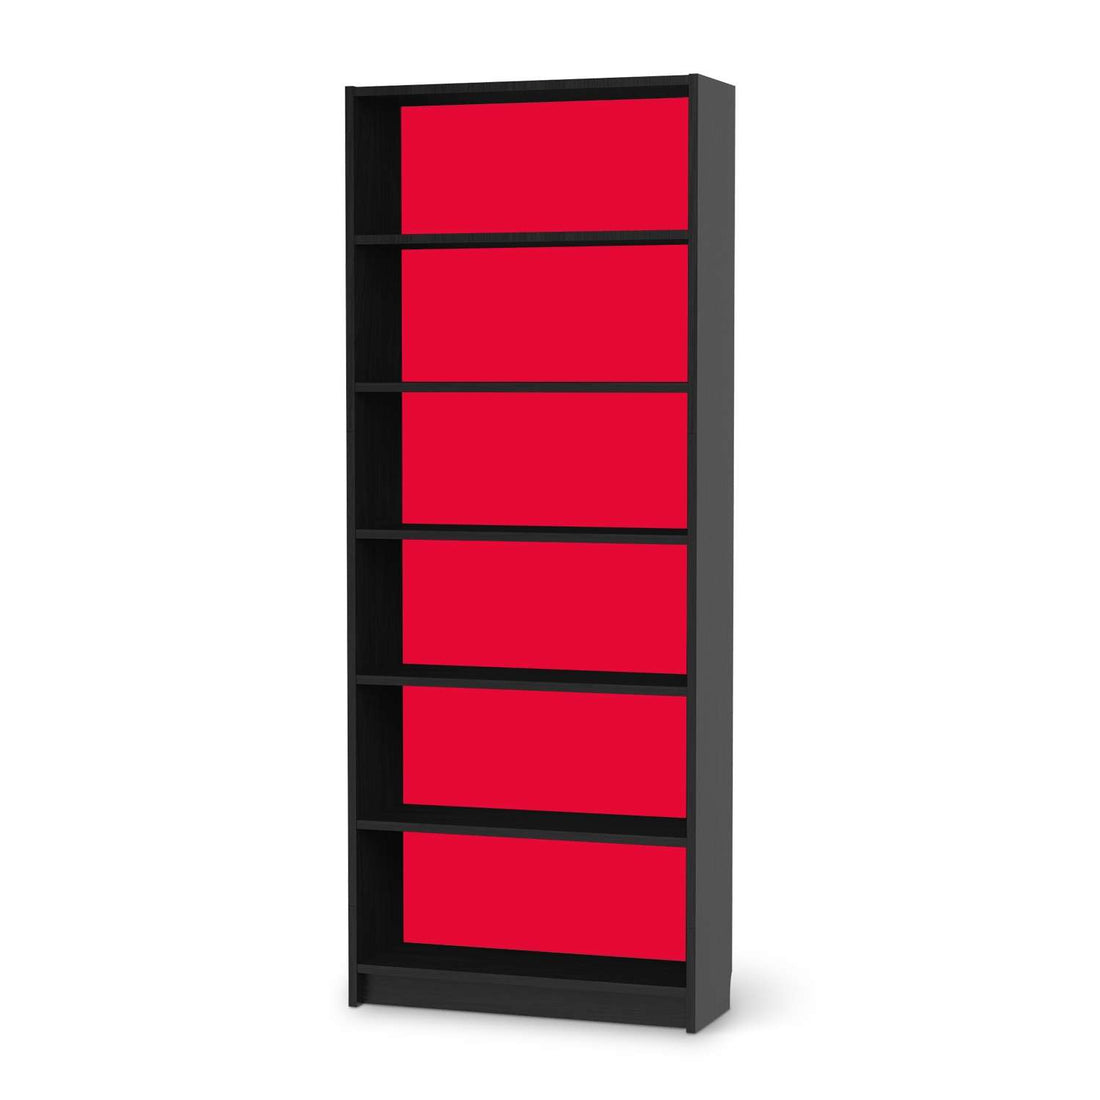 Klebefolie Rot Light - IKEA Billy Regal 6 Fächer - schwarz